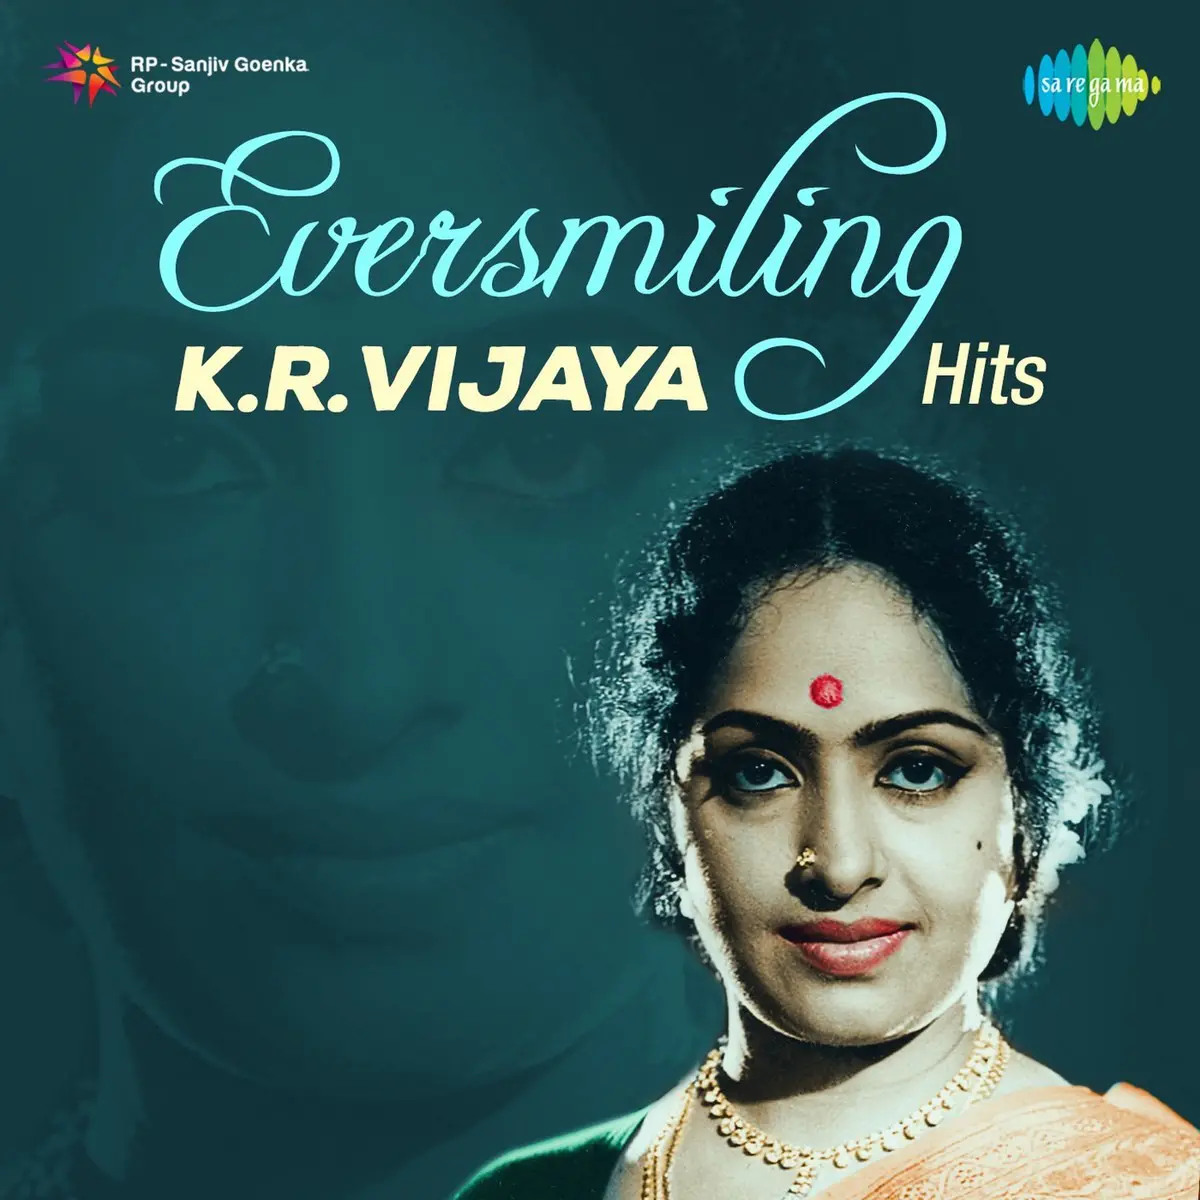 Malligai En Mannan Mp3 Song Download Eversmiling K R Vijaya